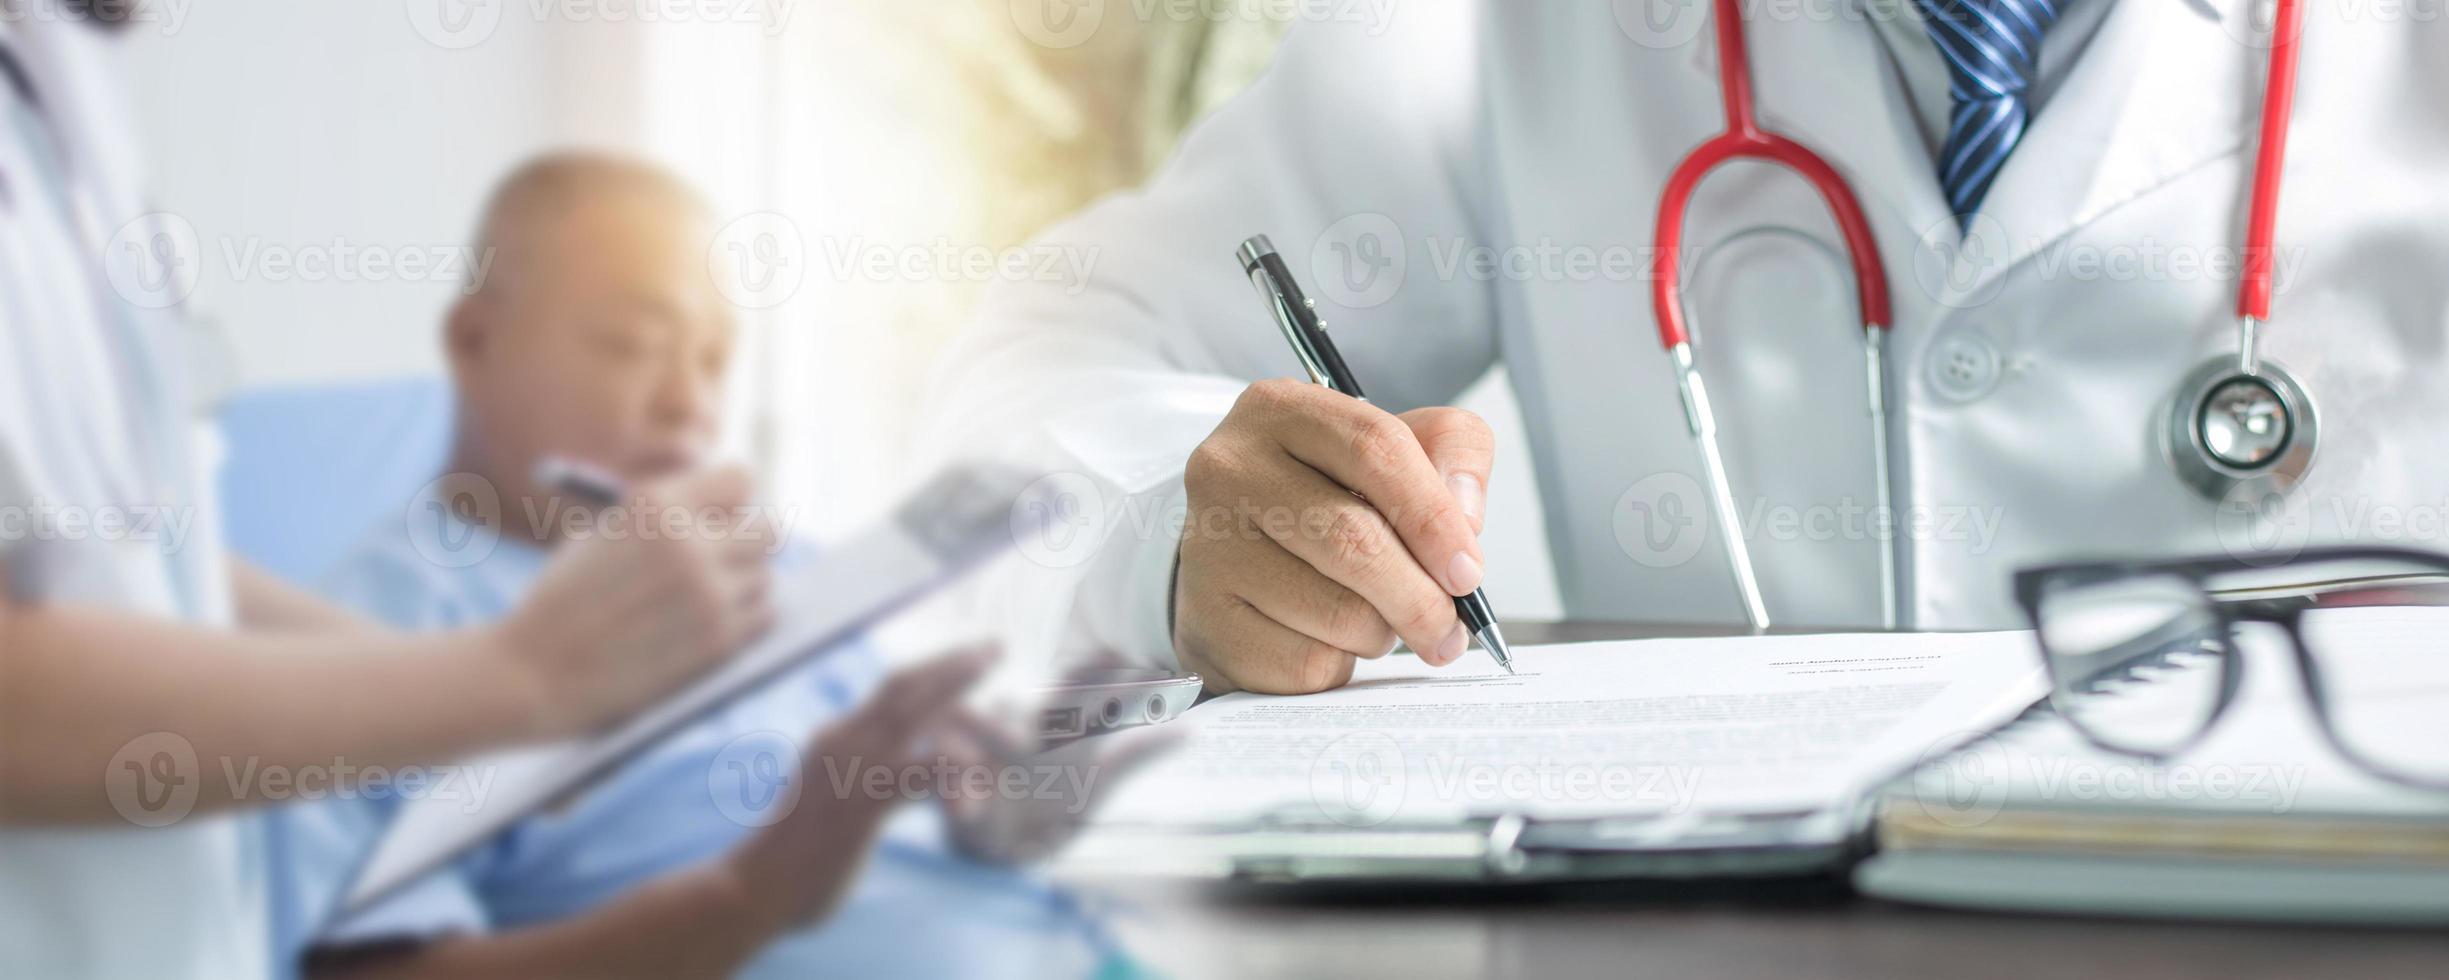 feche a mão do médico escrevendo e preenchendo no papel para o tratamento depois de checar e conversar com o paciente foto